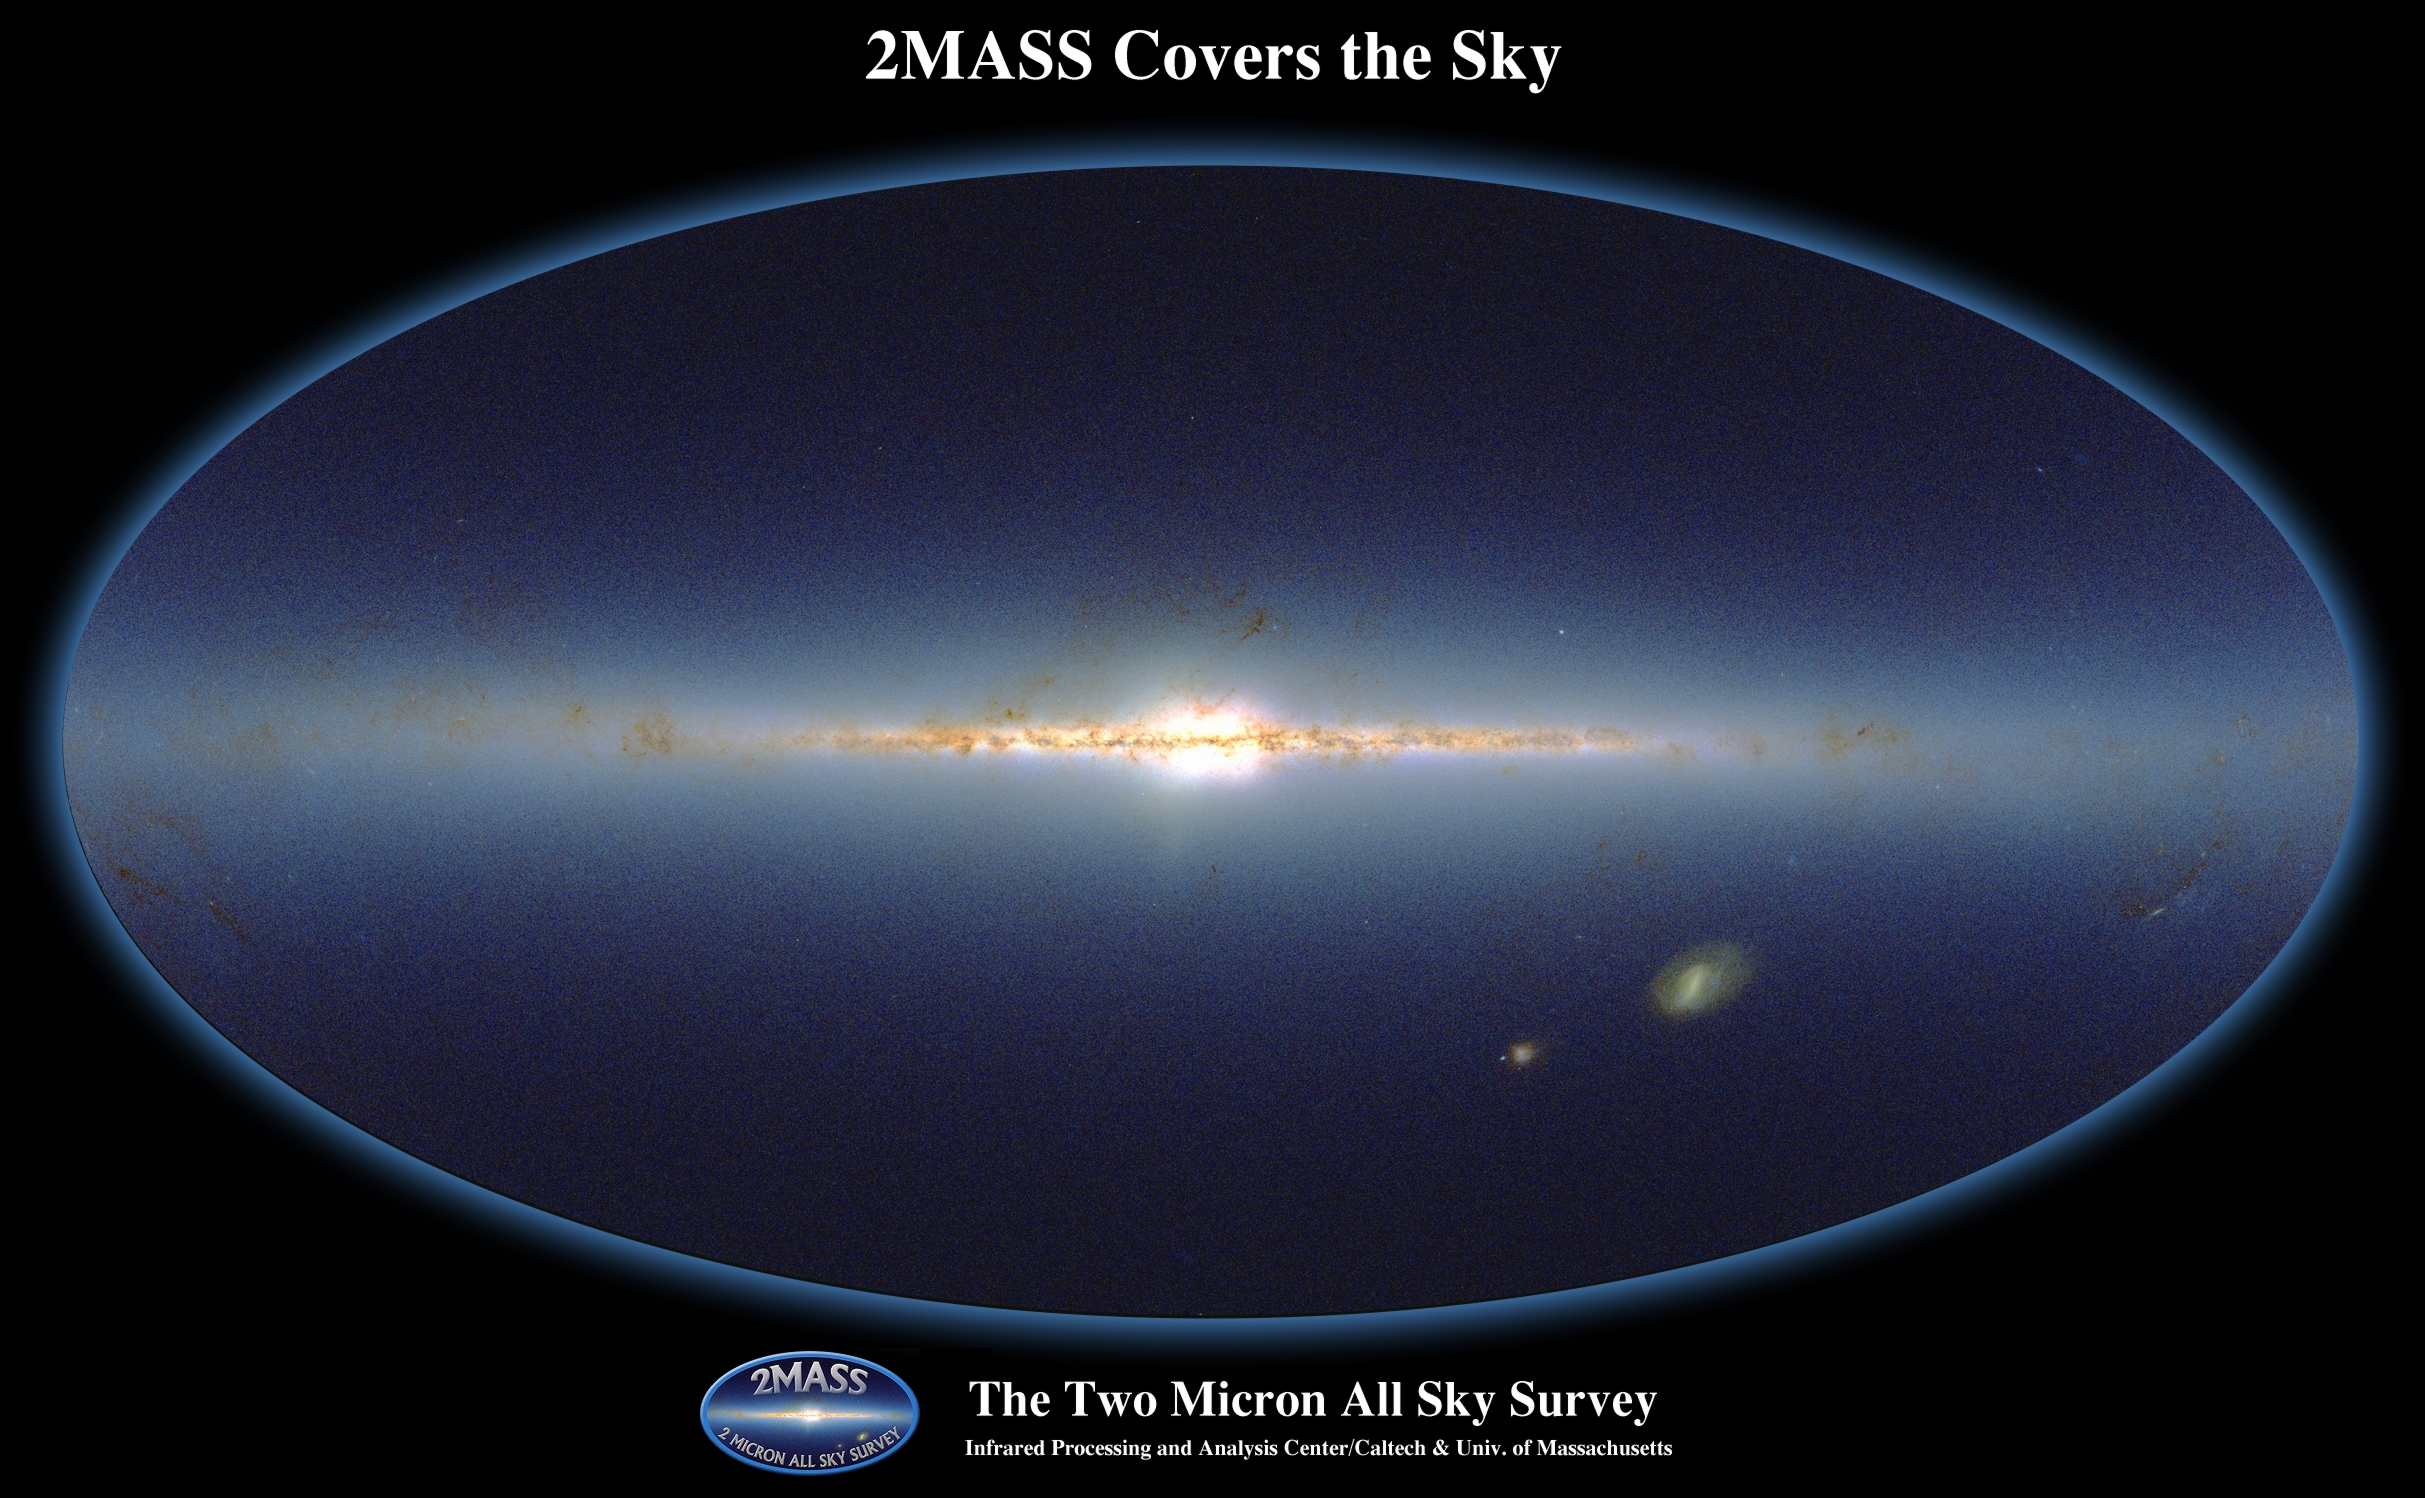 Opname van de hemel voor de 2MASS-infraroodsurvey, vergelijkbaar met Hubble-waarnemingen van de hele hemel in kleur (nabij-infrarood). De hier zichtbare sterren zijn merendeels heldere reuzensterren.  Credit: Two-micron all sky survey (2MASS)